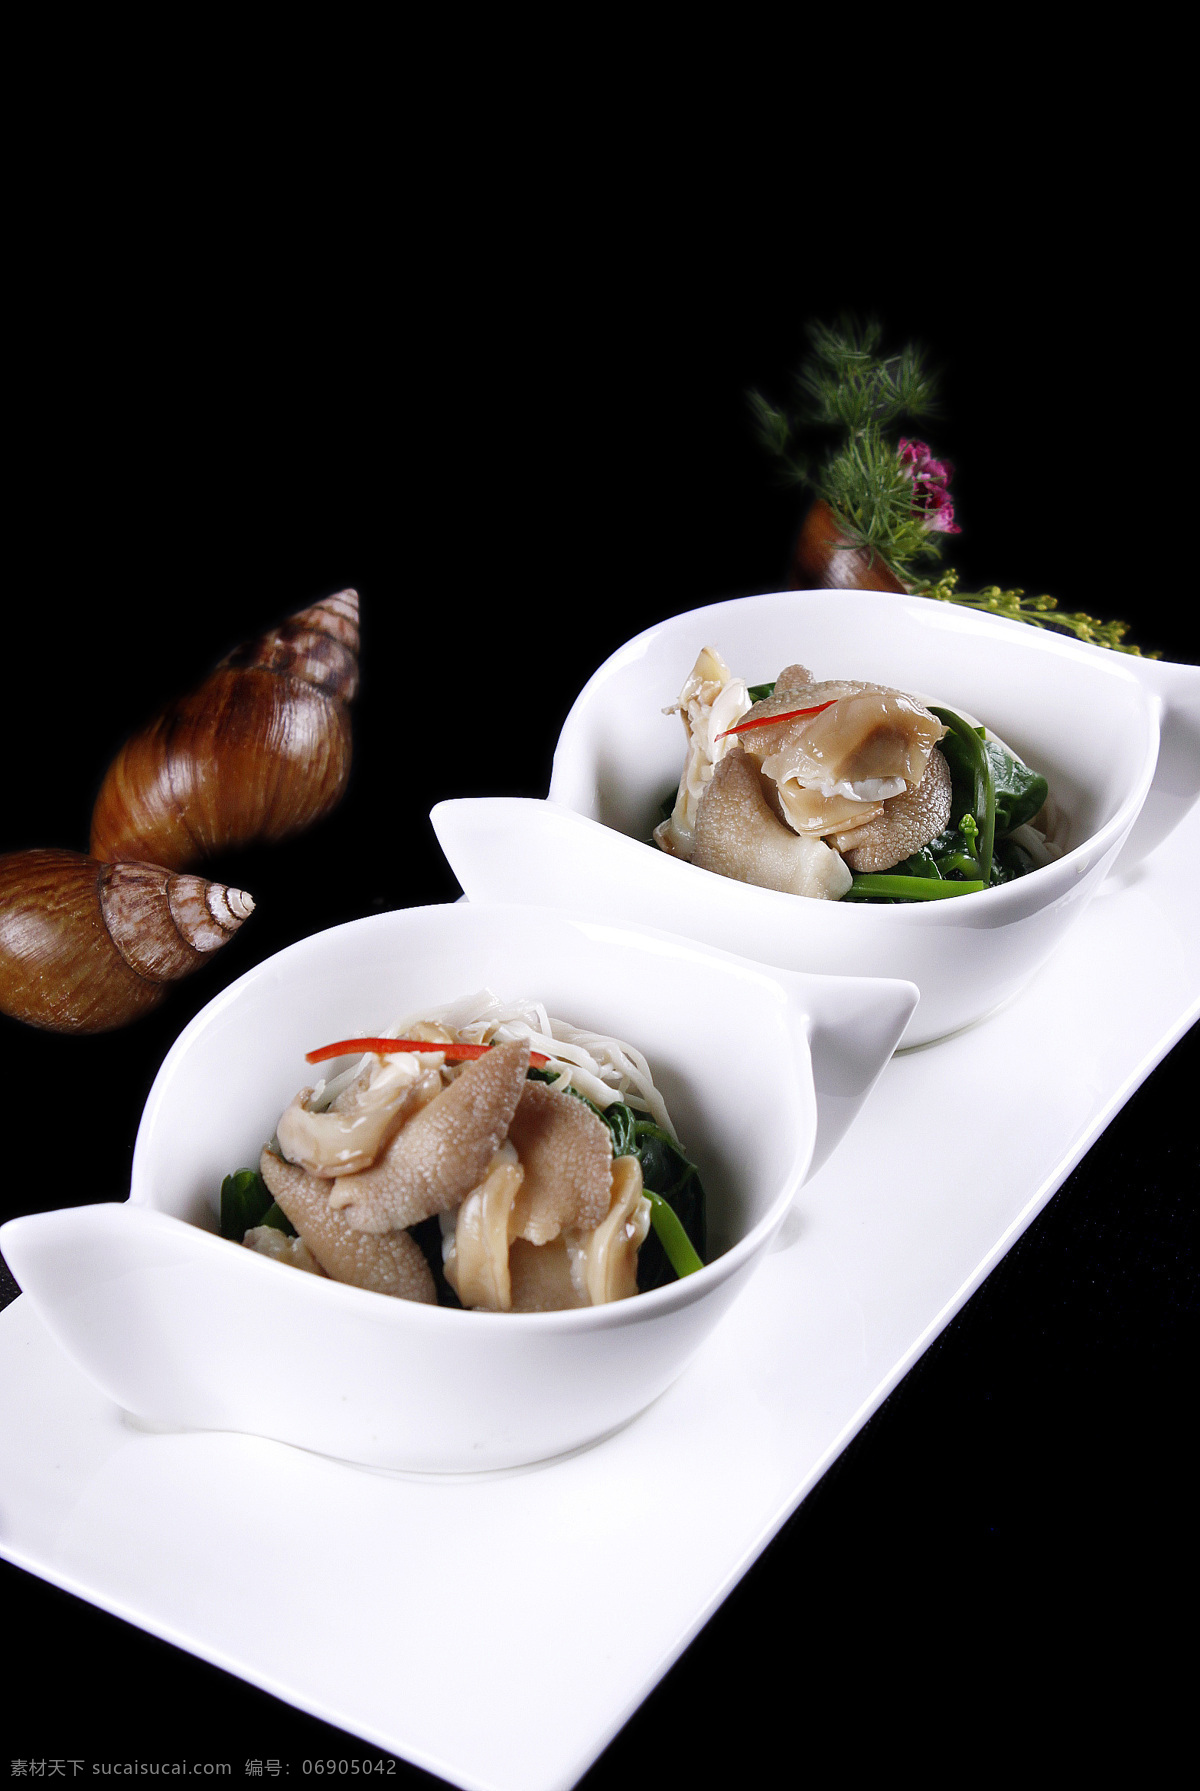 翡翠 珍 菌 配 蜗牛 珍菌 蜗 牛 菜品图 餐饮美食 传统美食